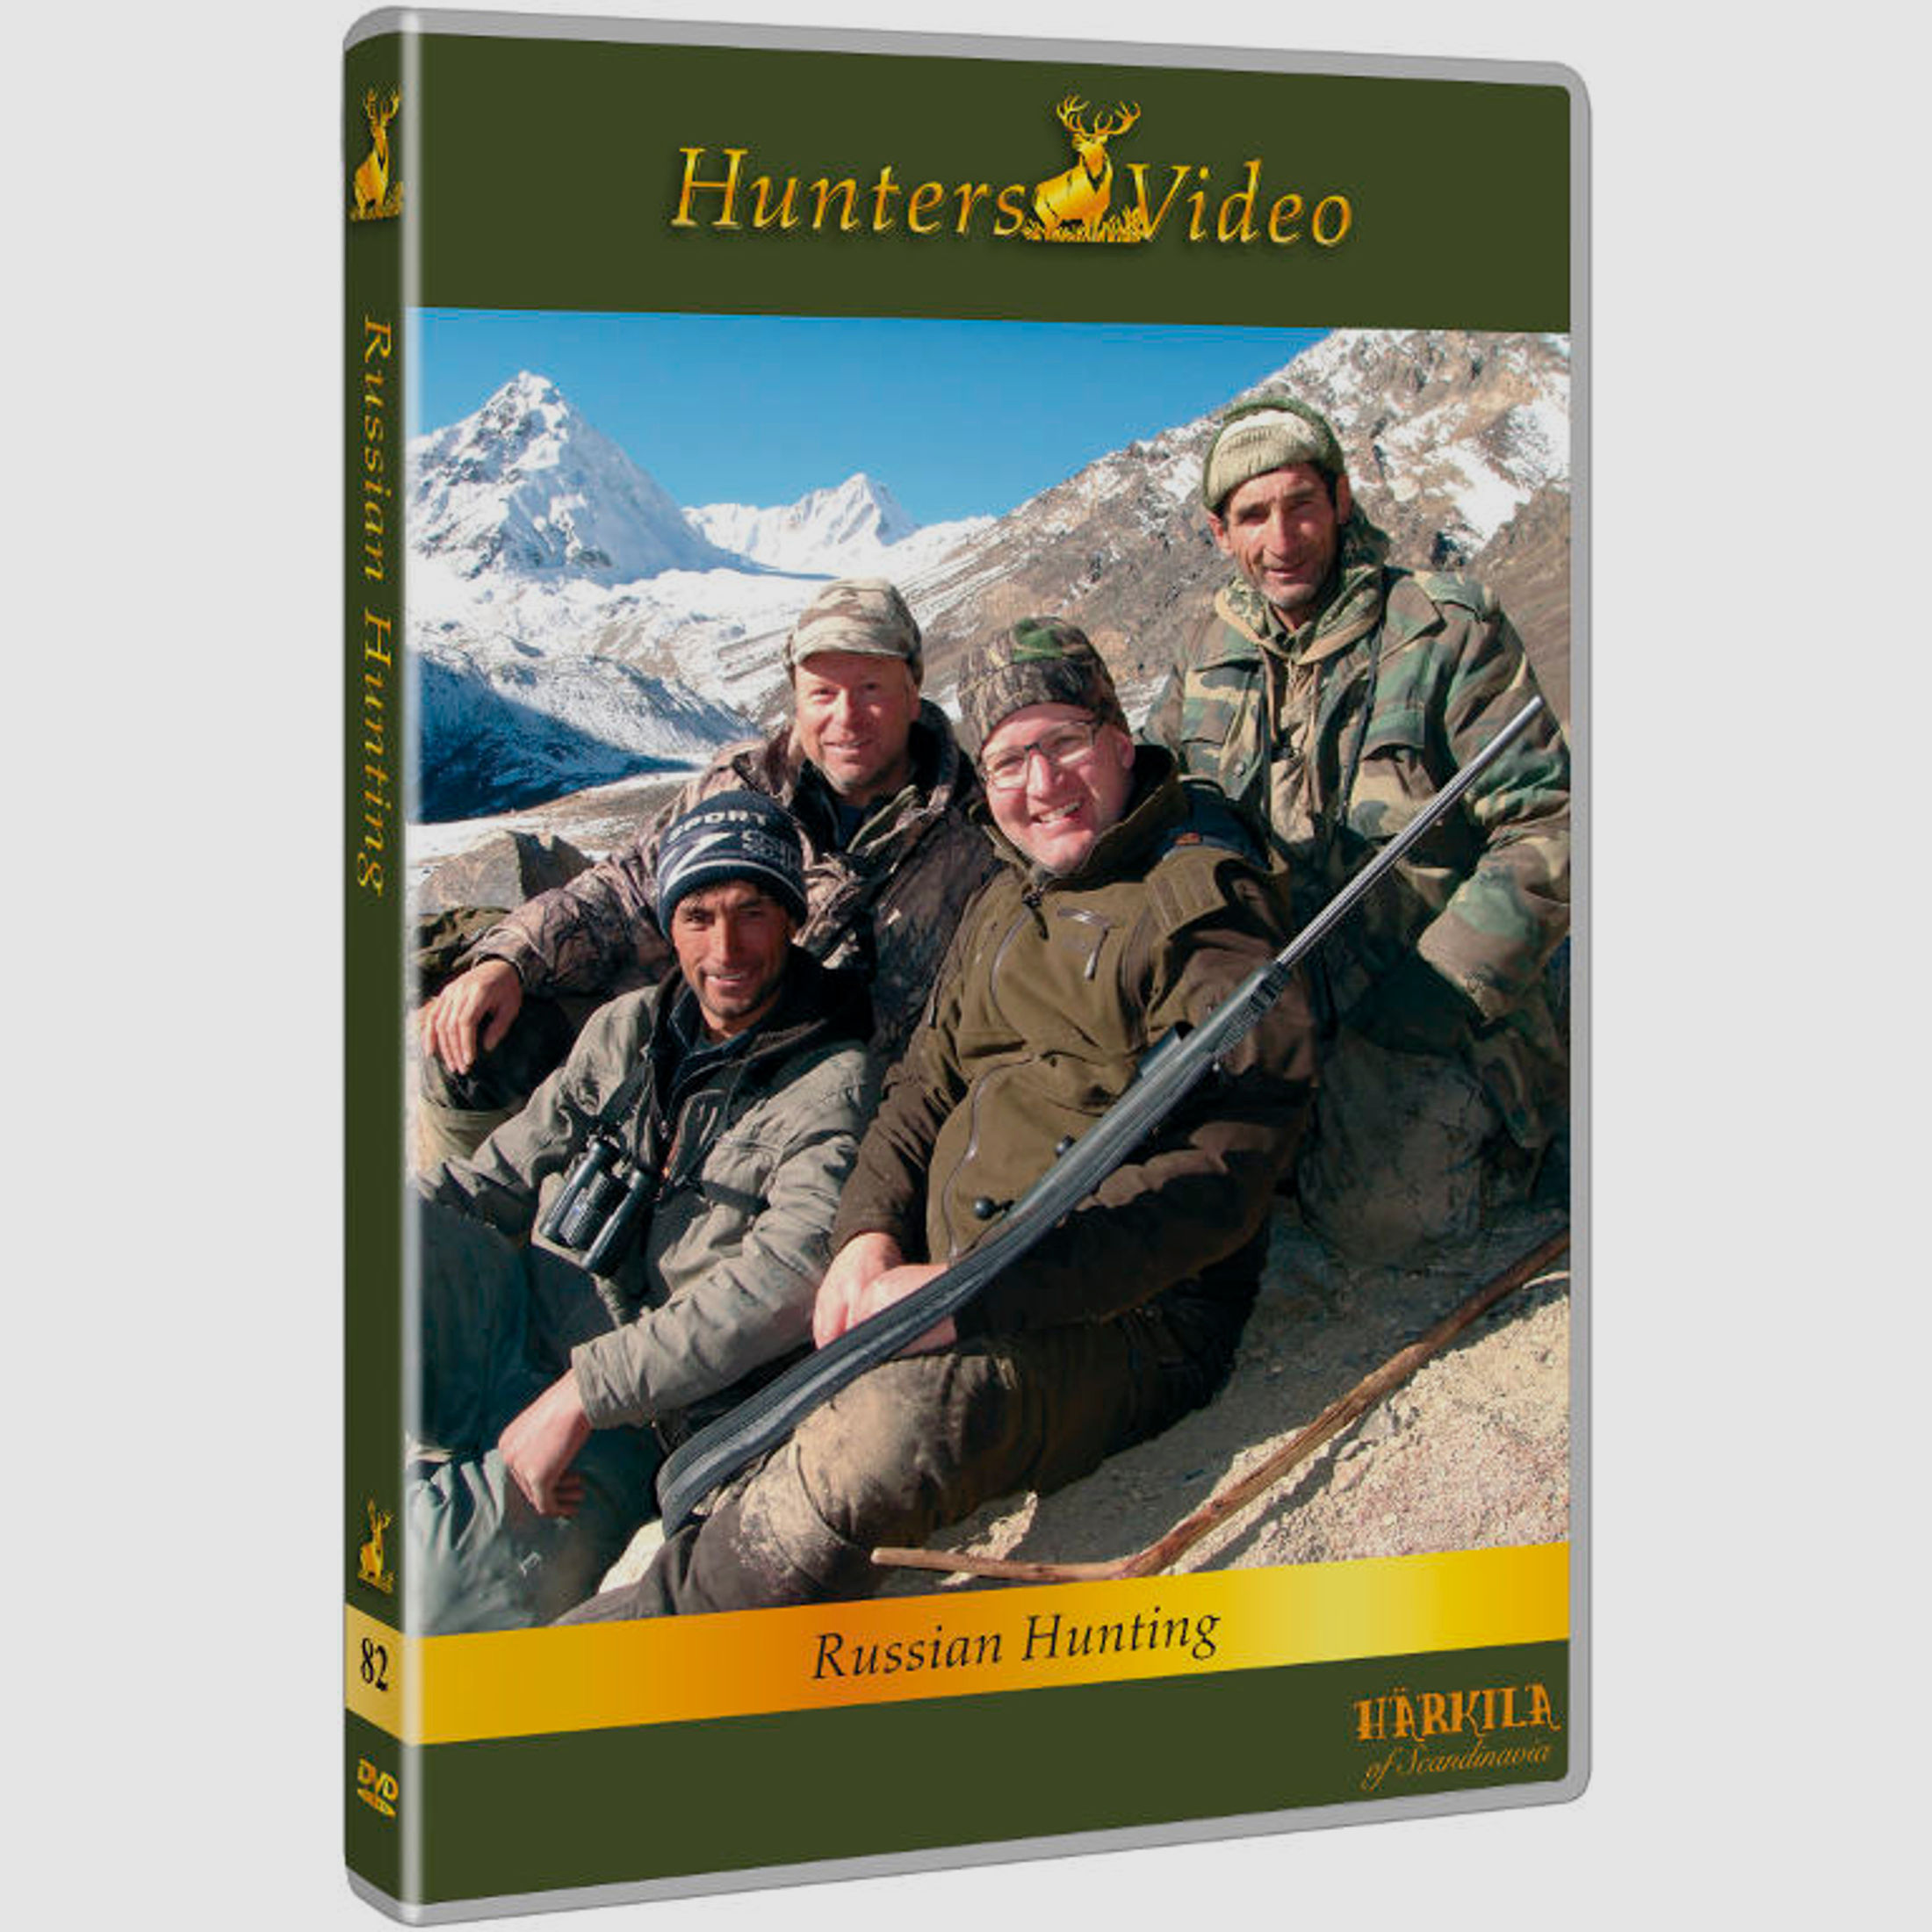 Hunters Video - DVD Russische Jagd